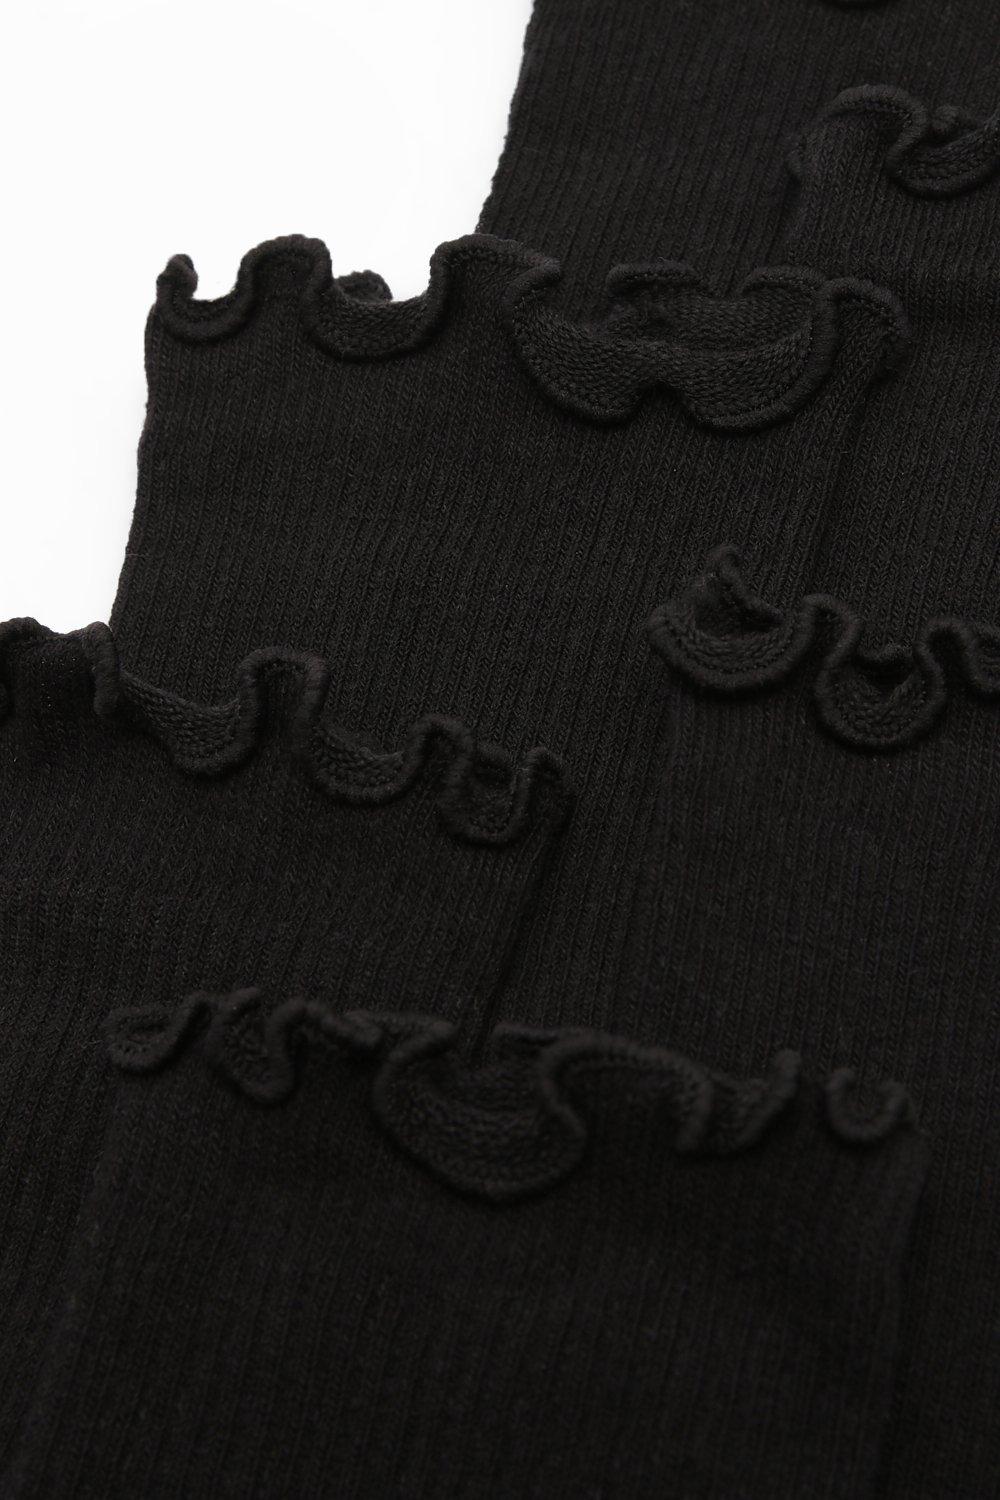 Pack de 3 pares de calcetines negros con ribete